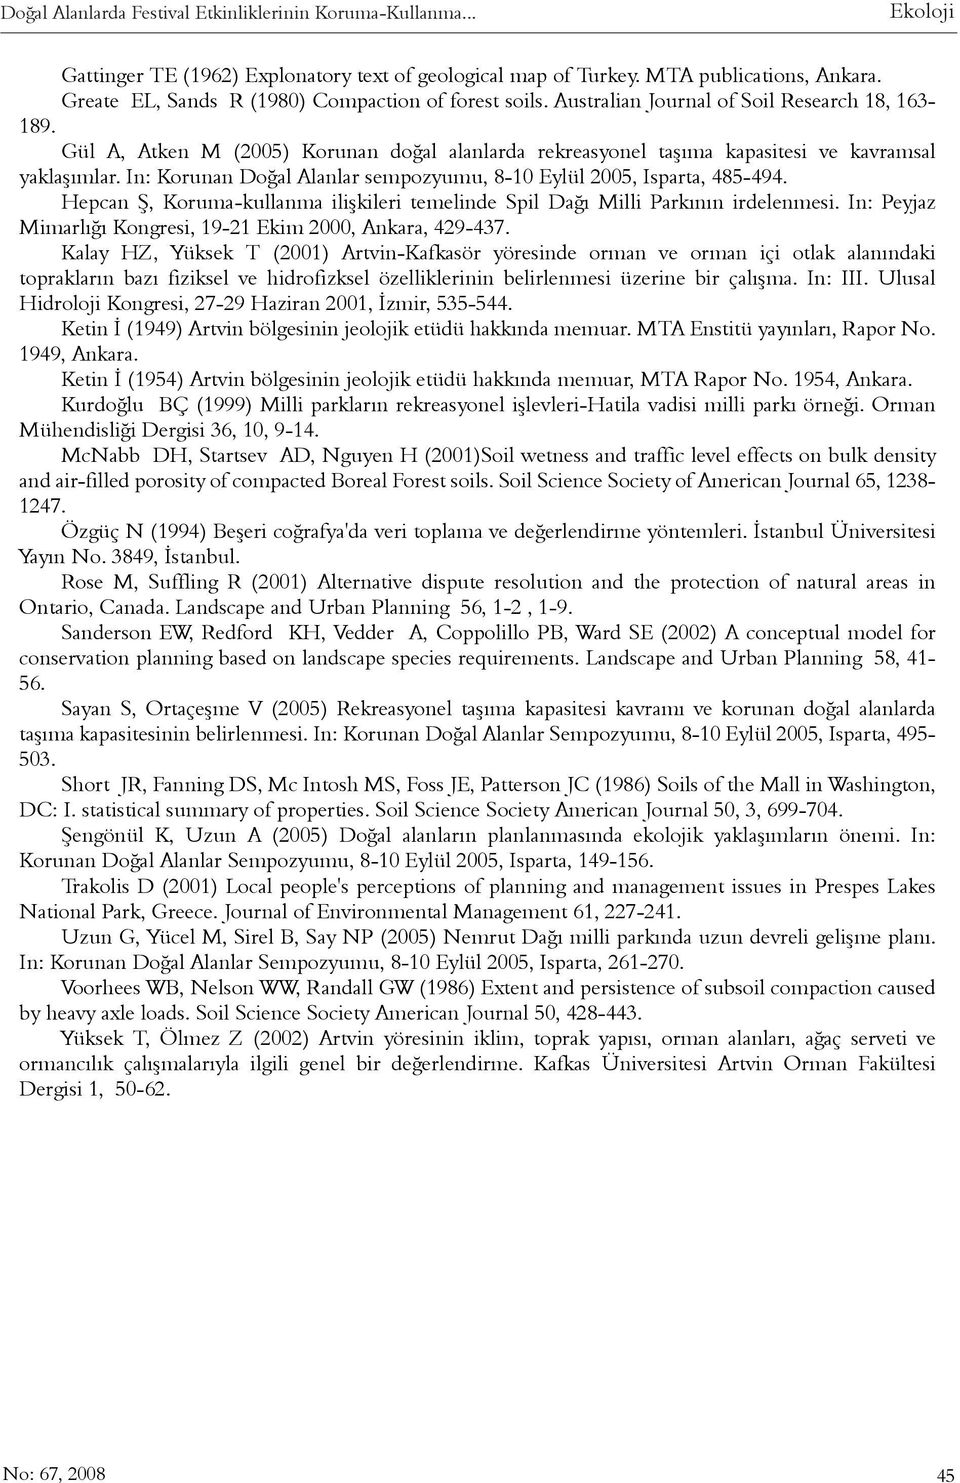 Gül A, Atken M (2005) Korunan doðal alanlarda rekreasyonel taþýma kapasitesi ve kavramsal yaklaþýmlar. In: Korunan Doðal Alanlar sempozyumu, 8-10 Eylül 2005, Isparta, 485-494.